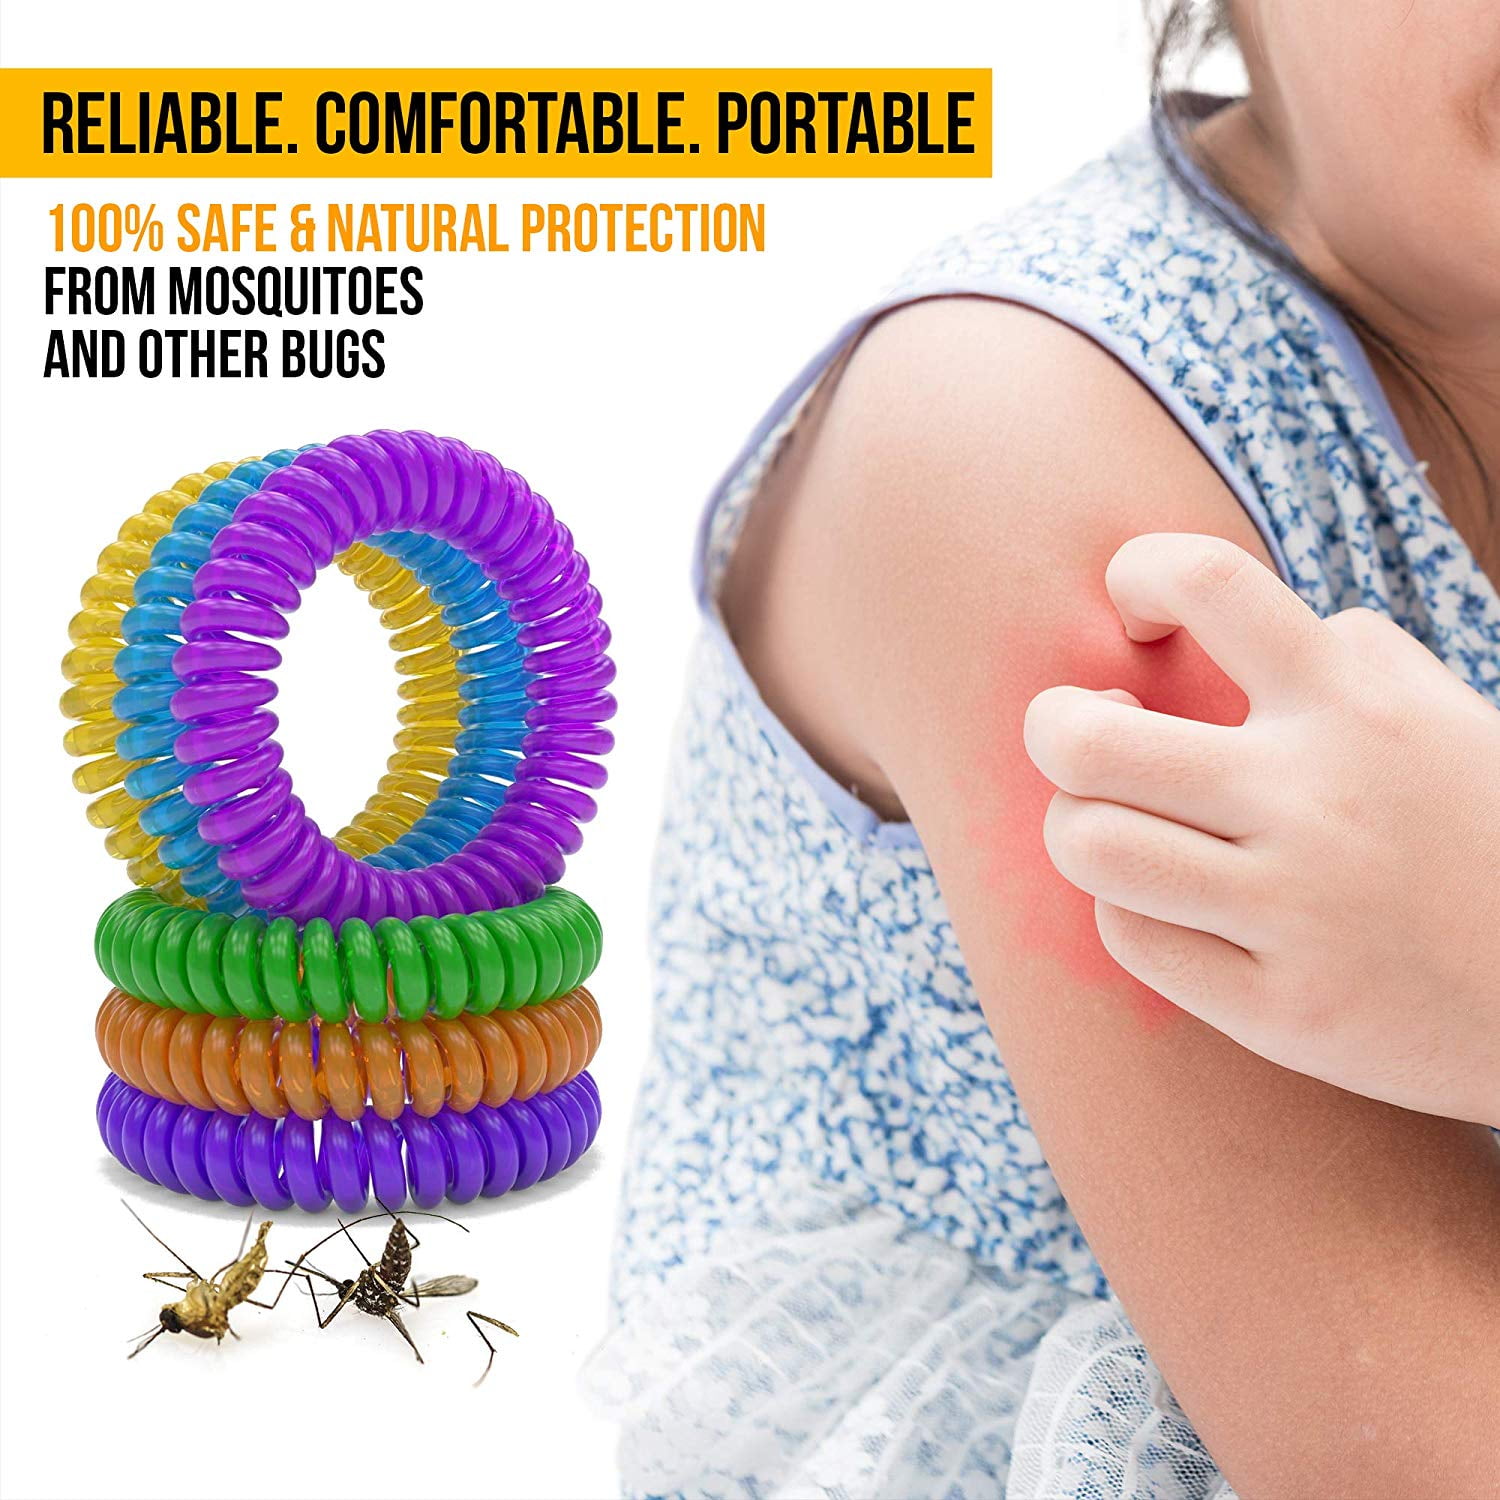 Mosquito Repellent Bracelet – Splurg'd Studio